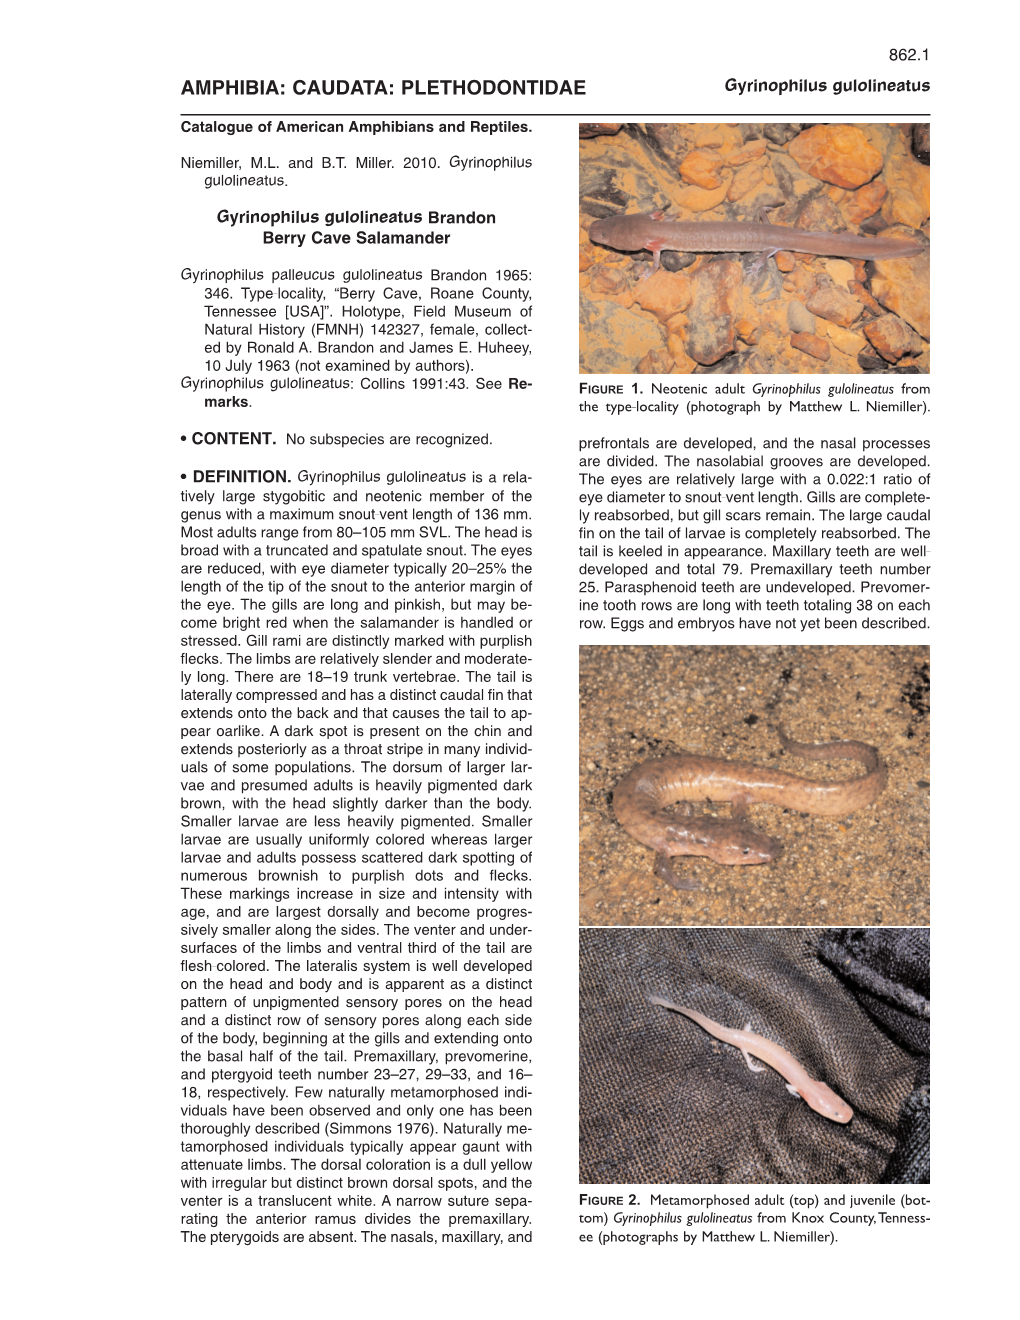 AMPHIBIA: CAUDATA: PLETHODONTIDAE Gyrinophilus Gulolineatus